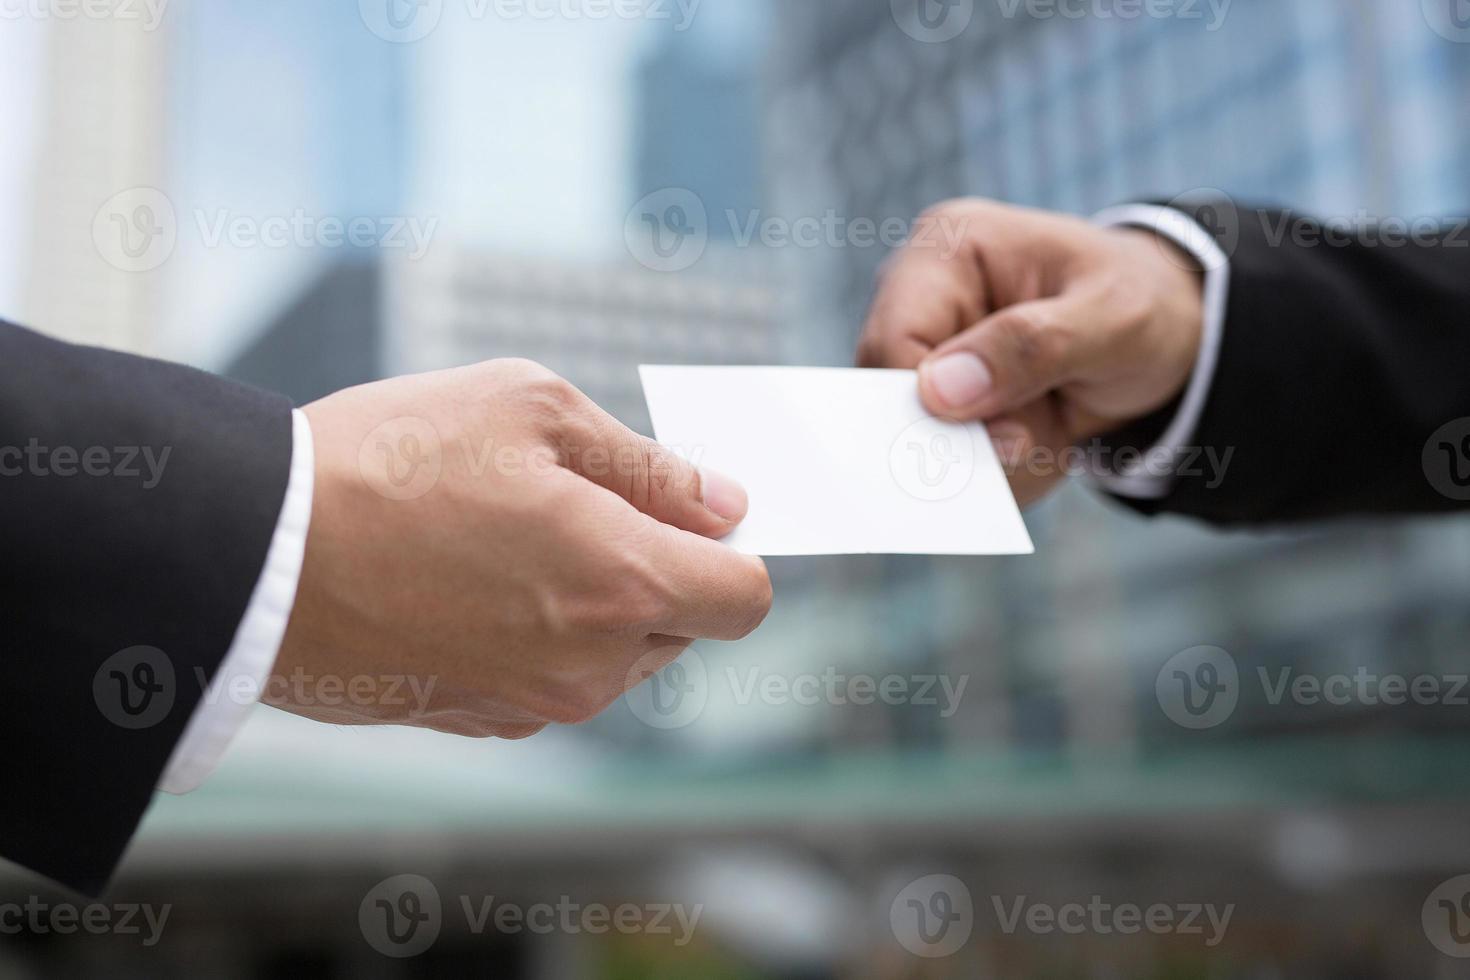 hombre de negocios en la mano sostenga mostrar tarjetas de visita tarjeta blanca en blanco maqueta presentación dar para conectar contactos comerciales. concepto de marca comercial. foto